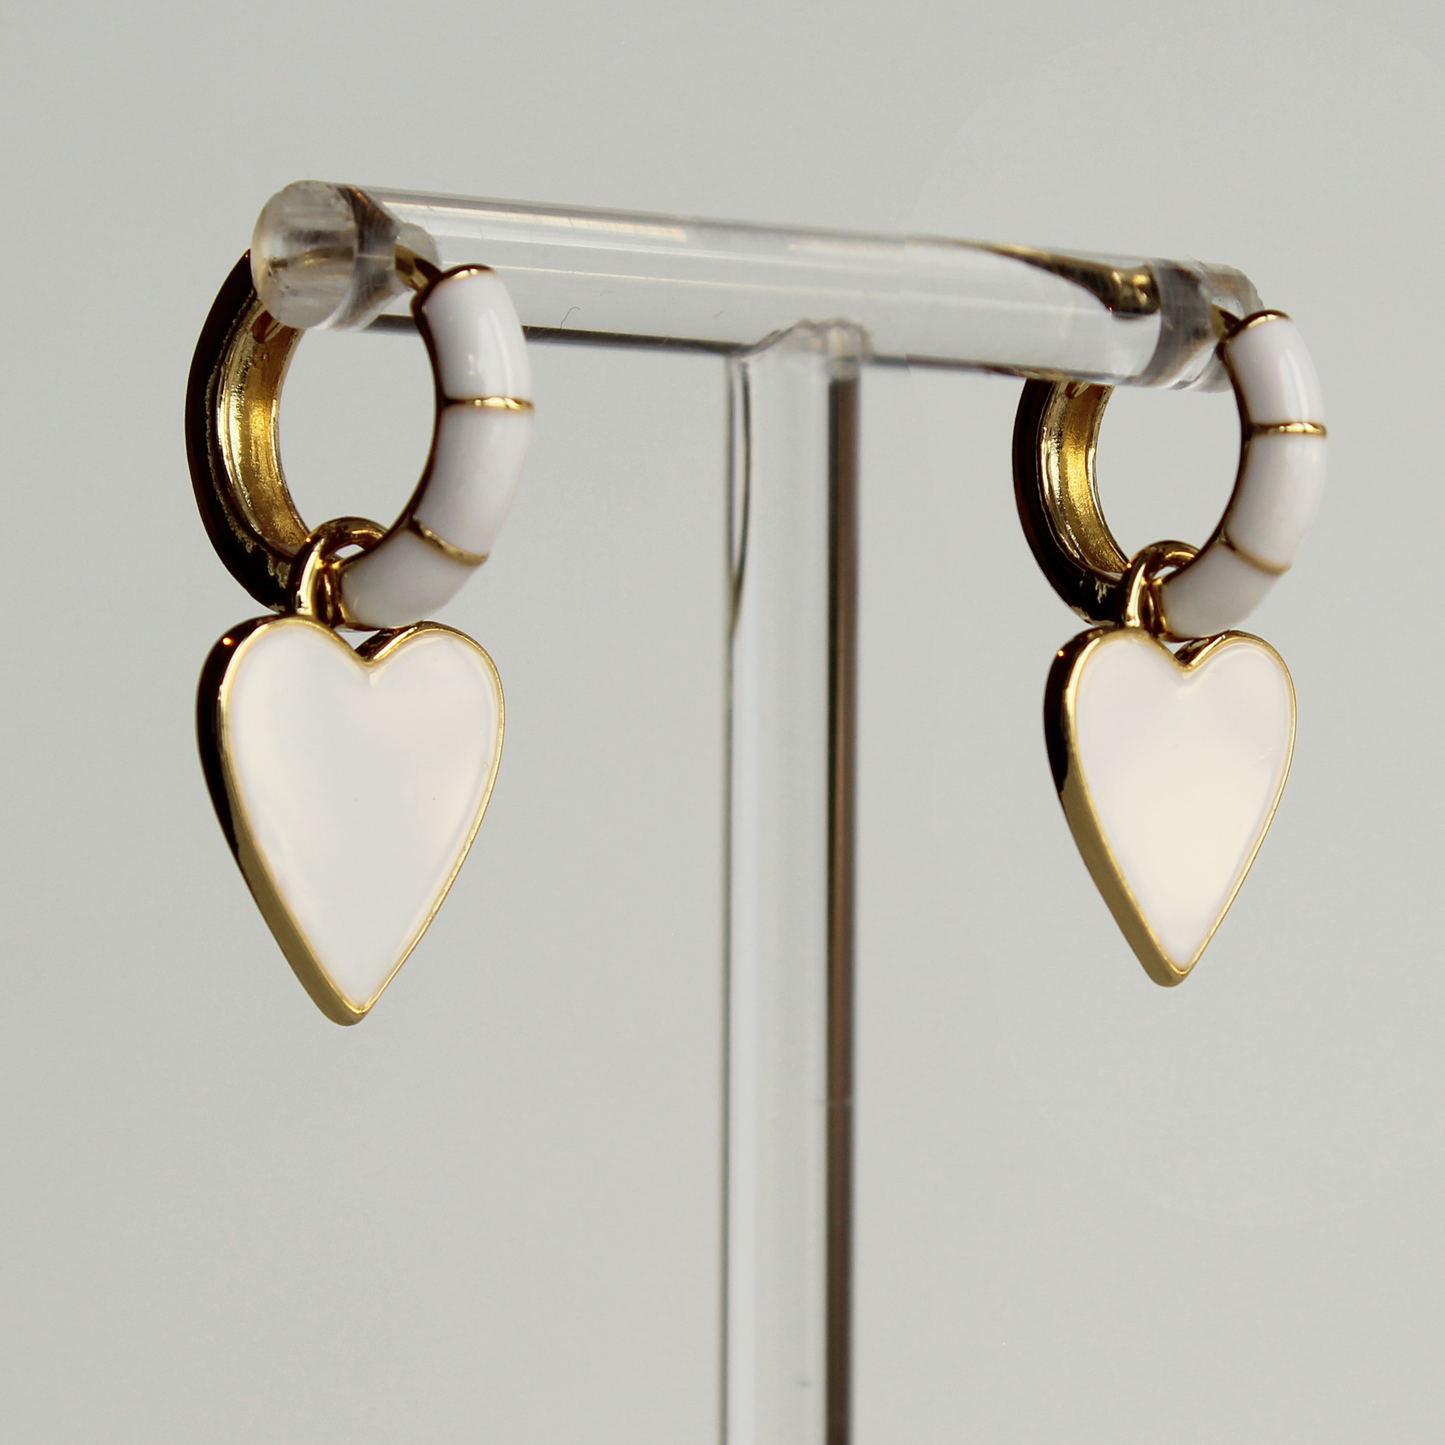 Enamel heart earrings